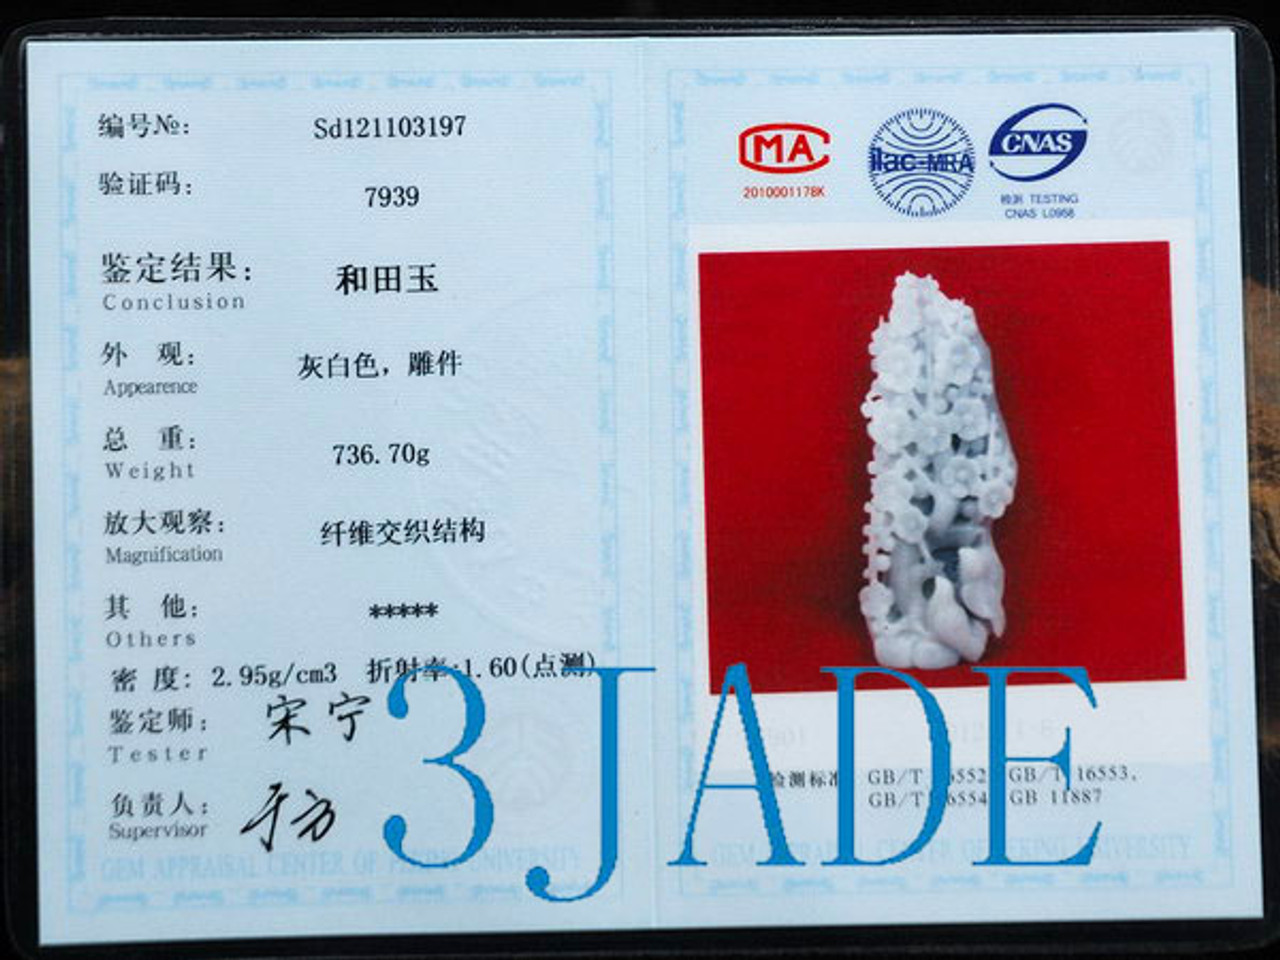 certified jade